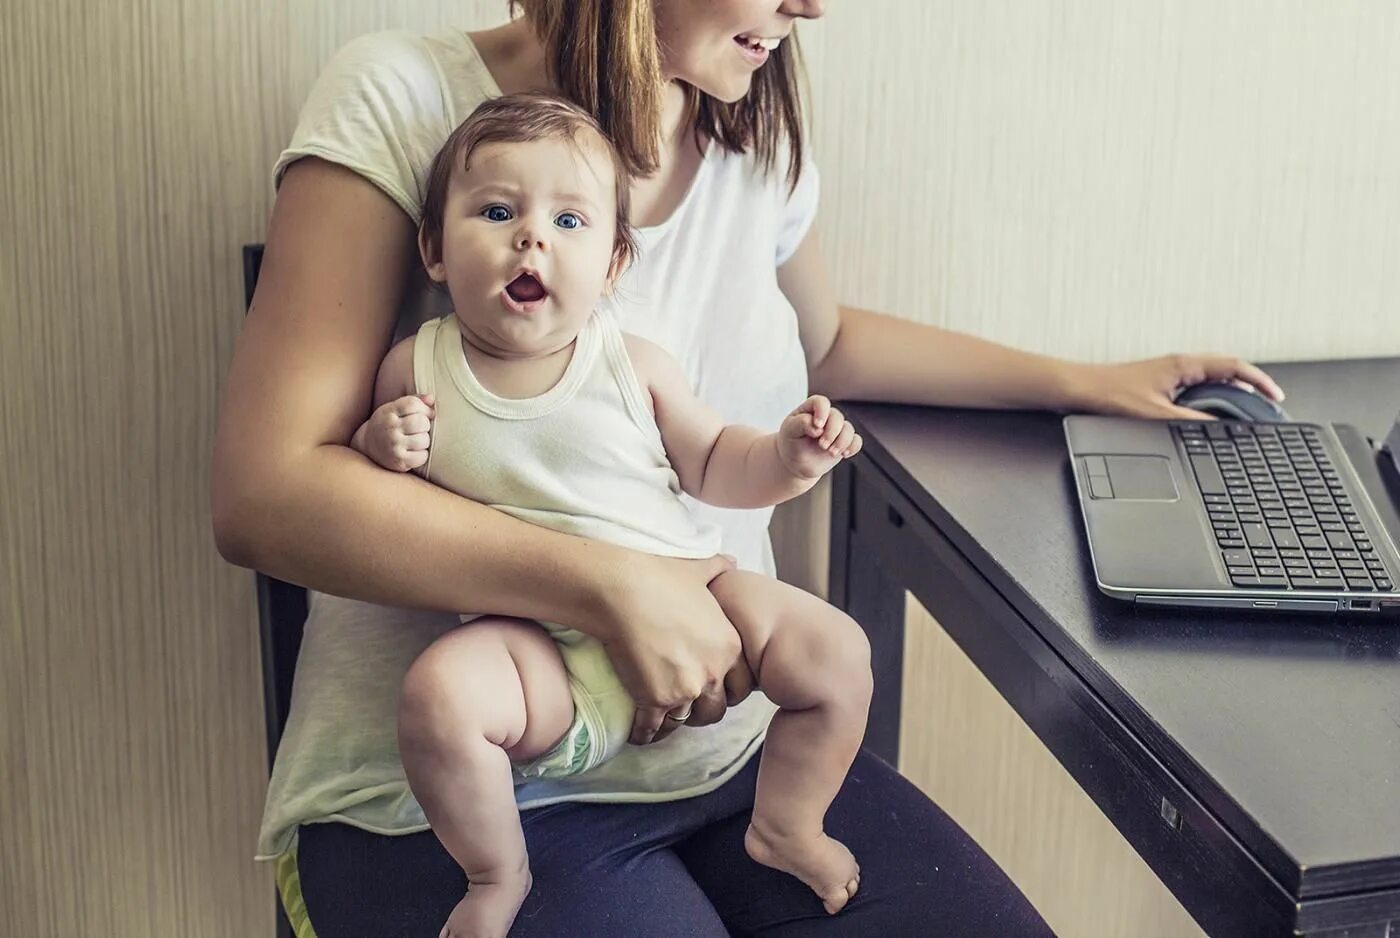 Реклама новая мама. Мама в декрете. Мама с ребенком за компьютером. Женщина с ребенком за компьютером. Мамочка с ребенком у компьютера.